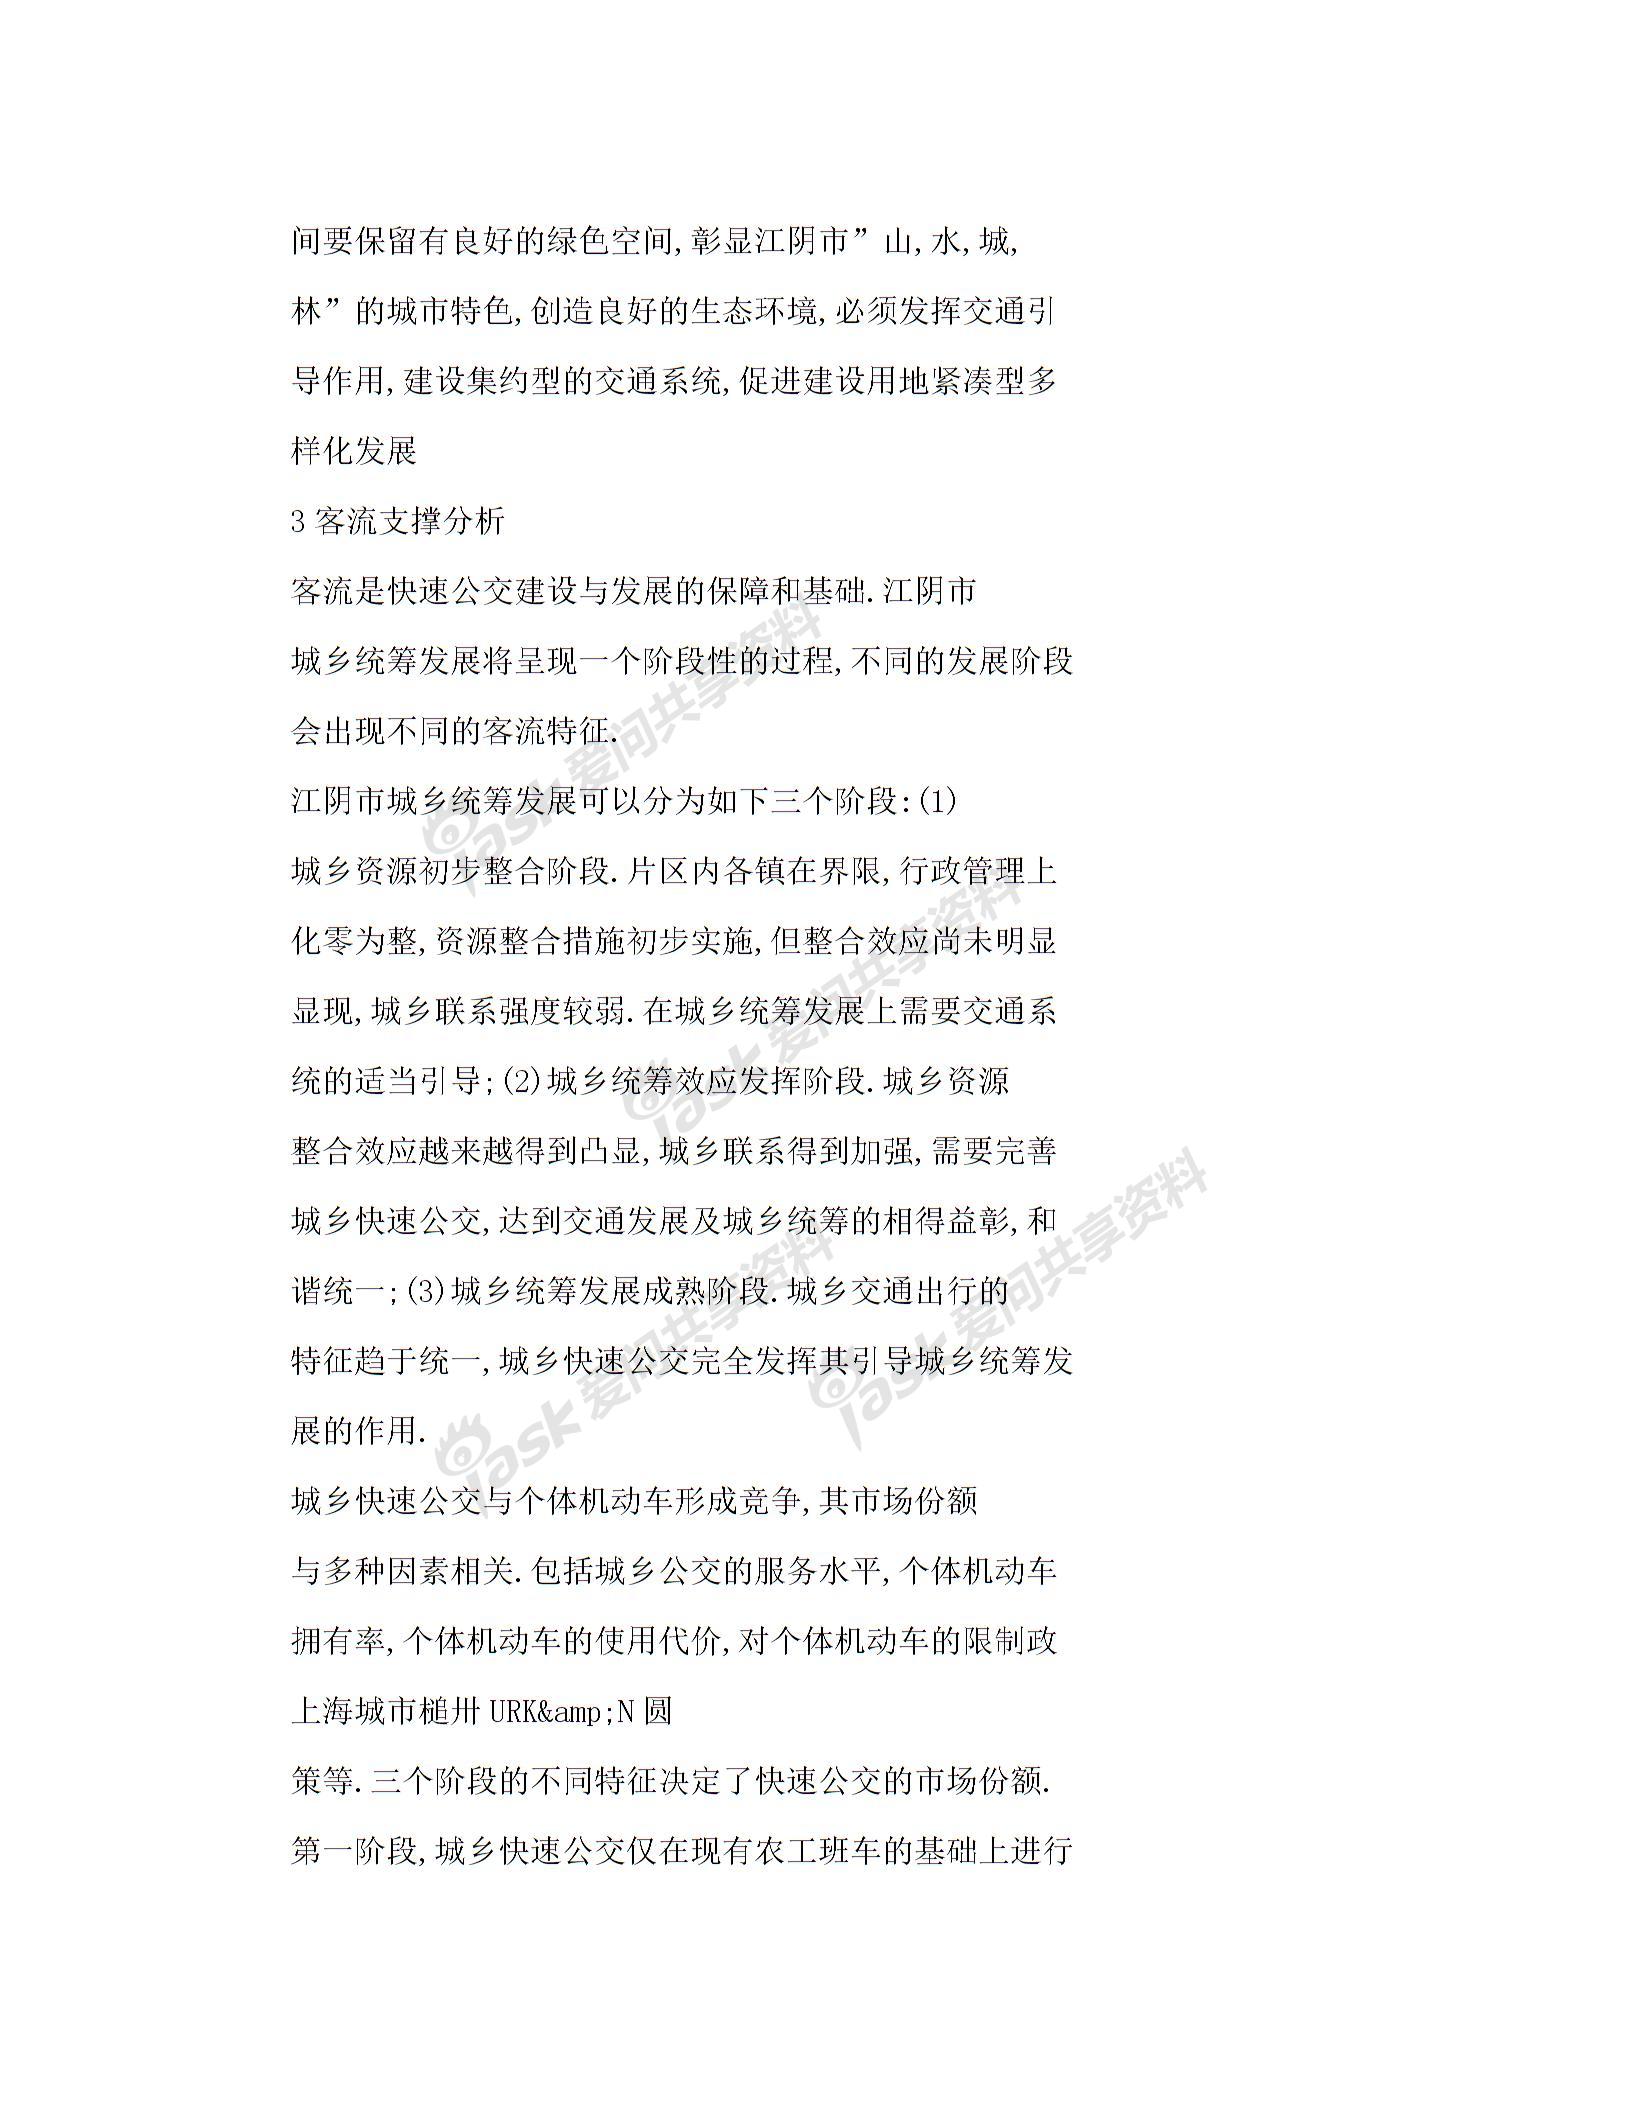 【word】 交通引导理念下的快速公交线网规划——以江苏省江阴市为例图片5